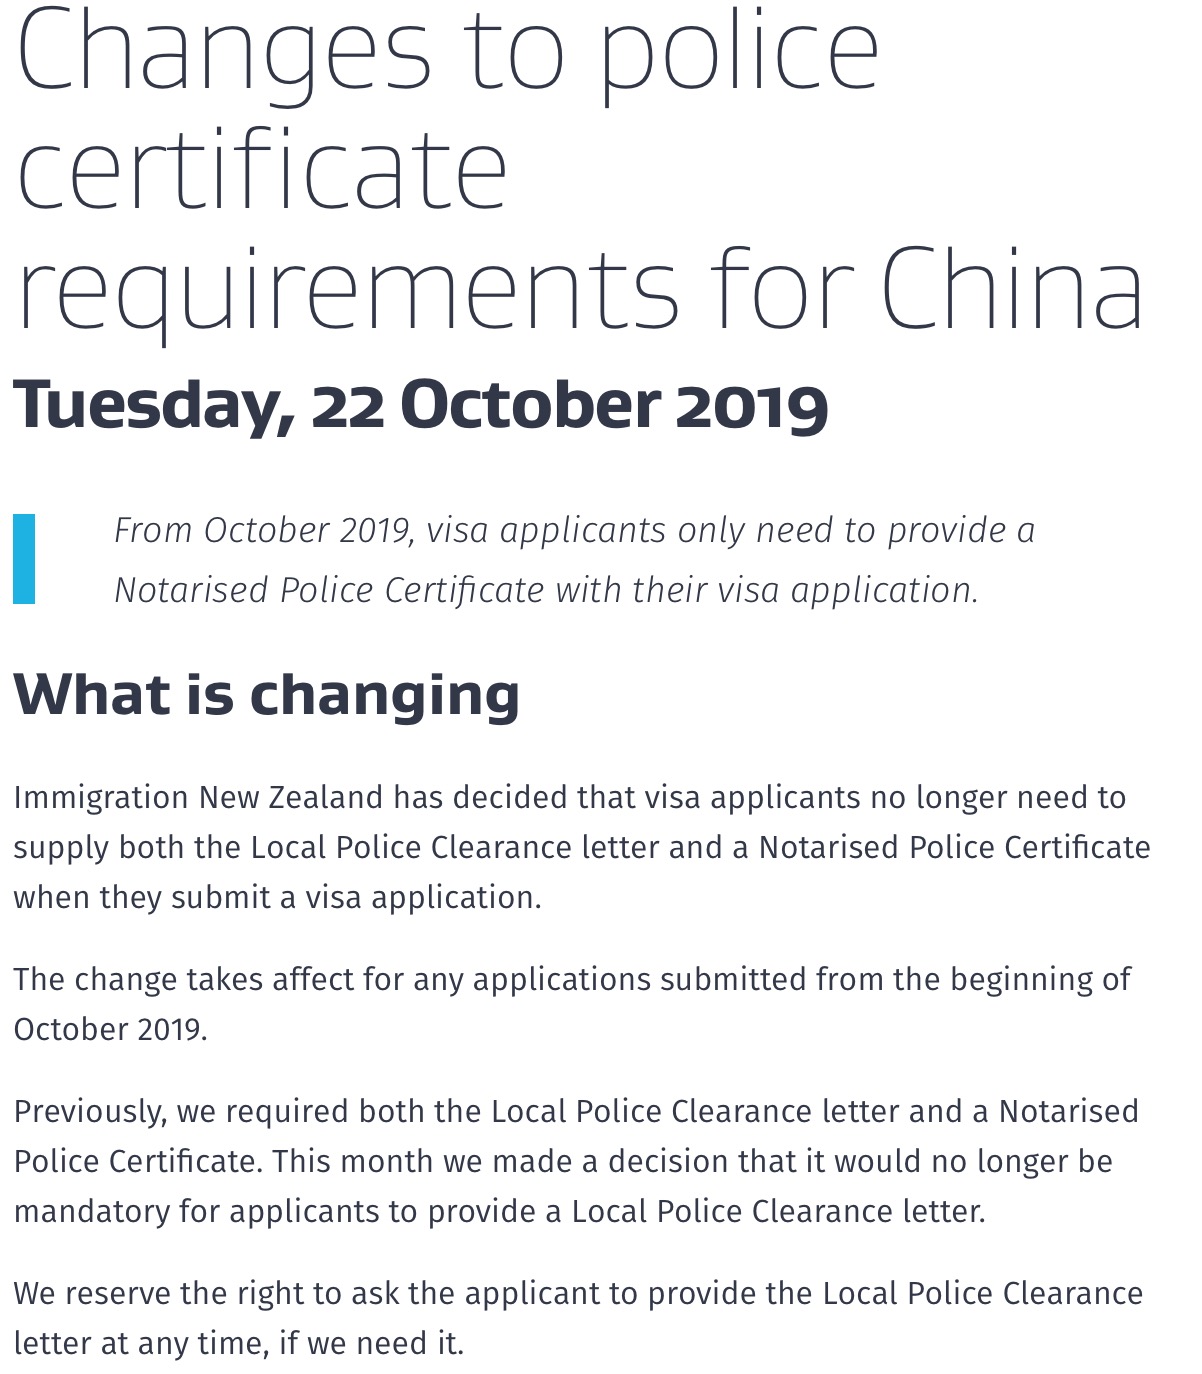 2019年10月起新西兰移民局只需要提供无犯罪公证书即可